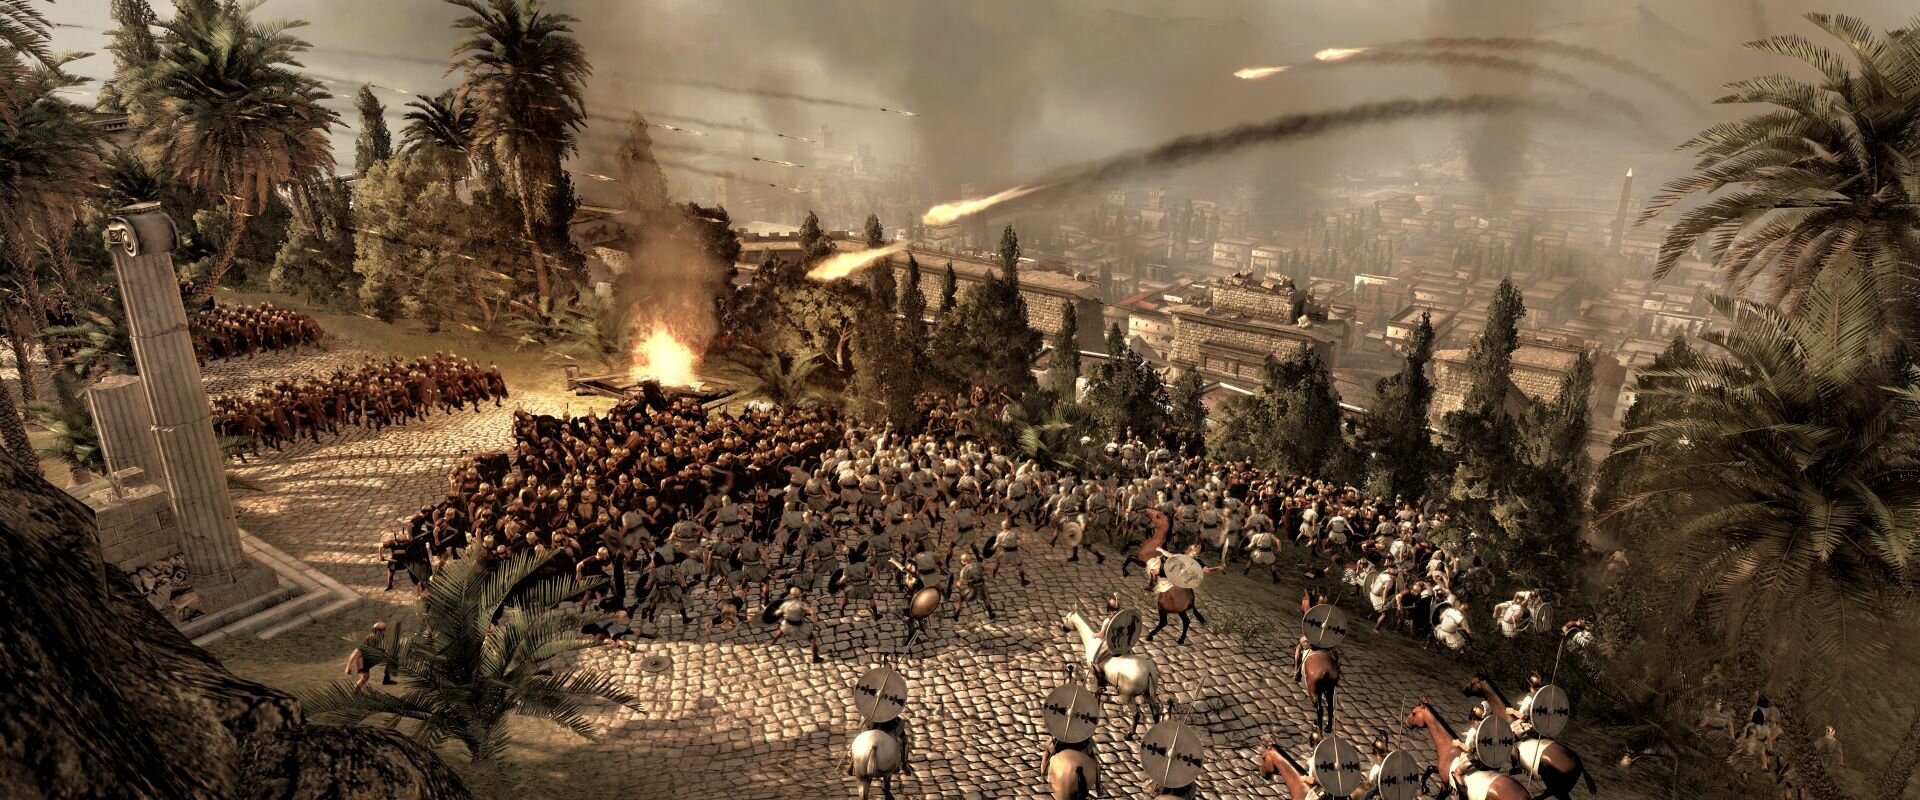 Интервью для портала СiЧъ про Total War: Rome 2 на Игромир 2012